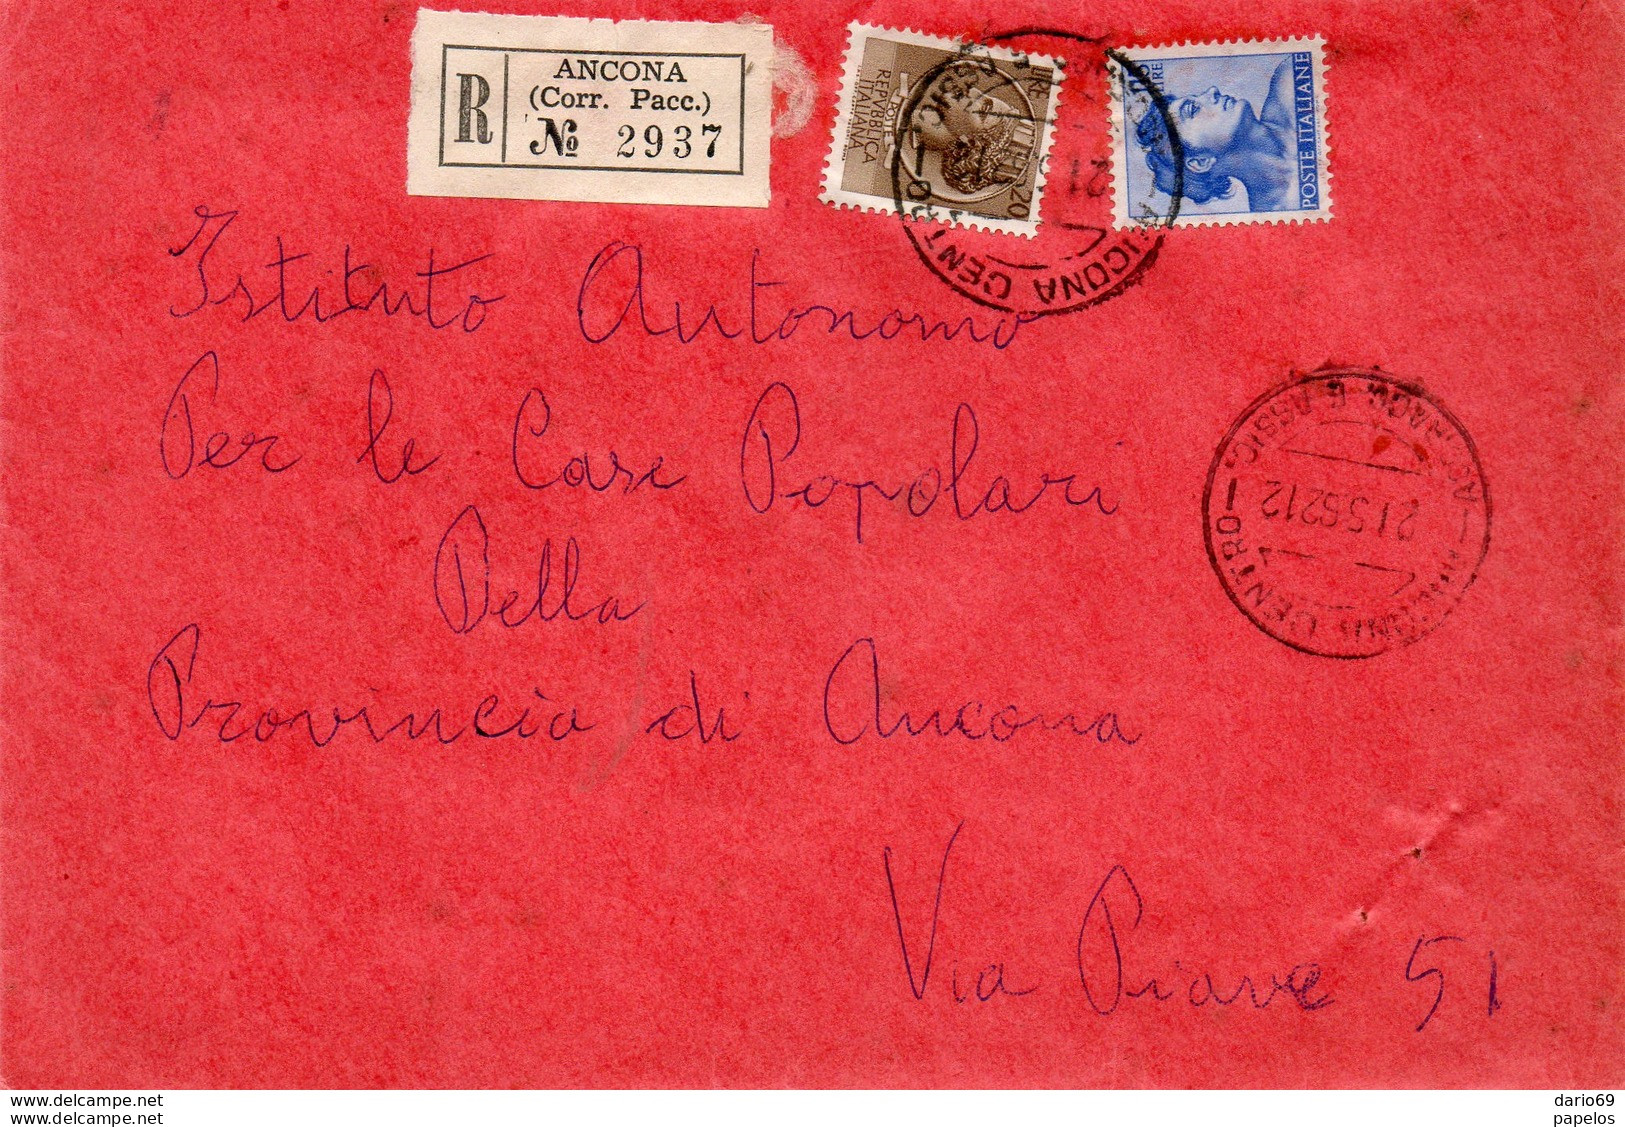 1962    LETTERA RACCOMANDATA  CON ANNULLO ANCONA - 1961-70: Poststempel